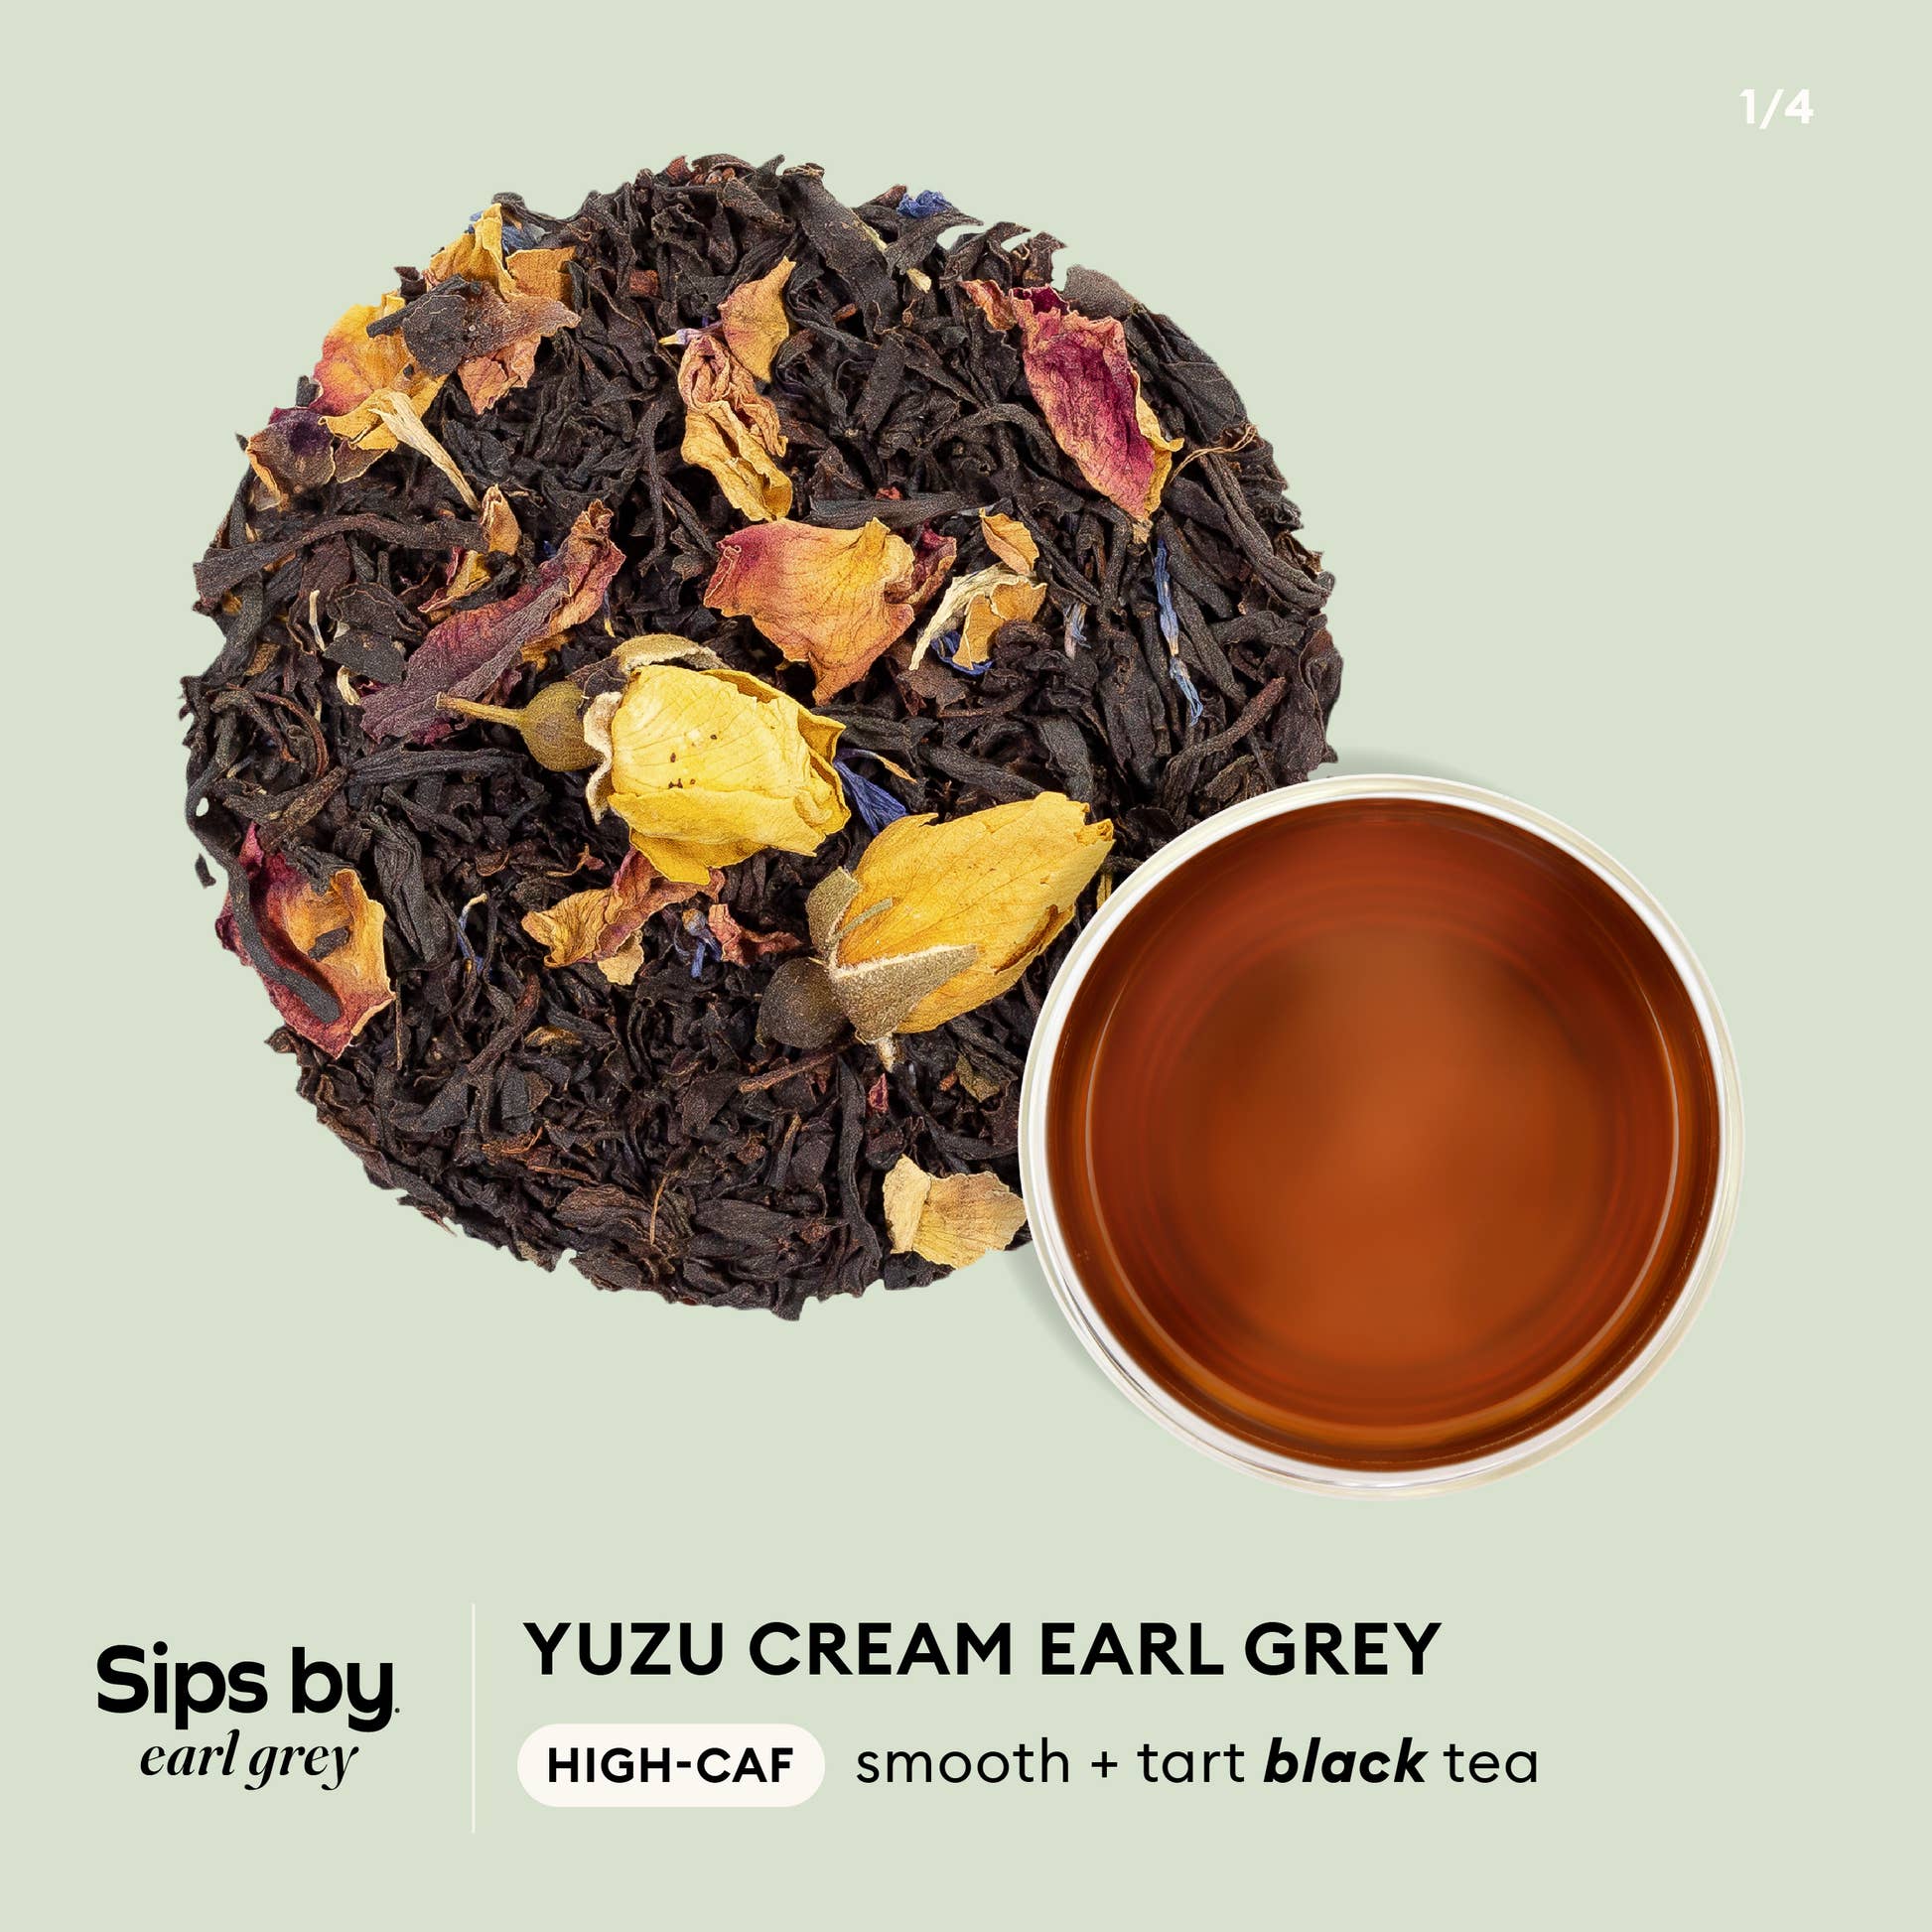 Sips by Earl Grey - Yuzu Cream Earl Grey high-caf, smooth + tart black tea infographic